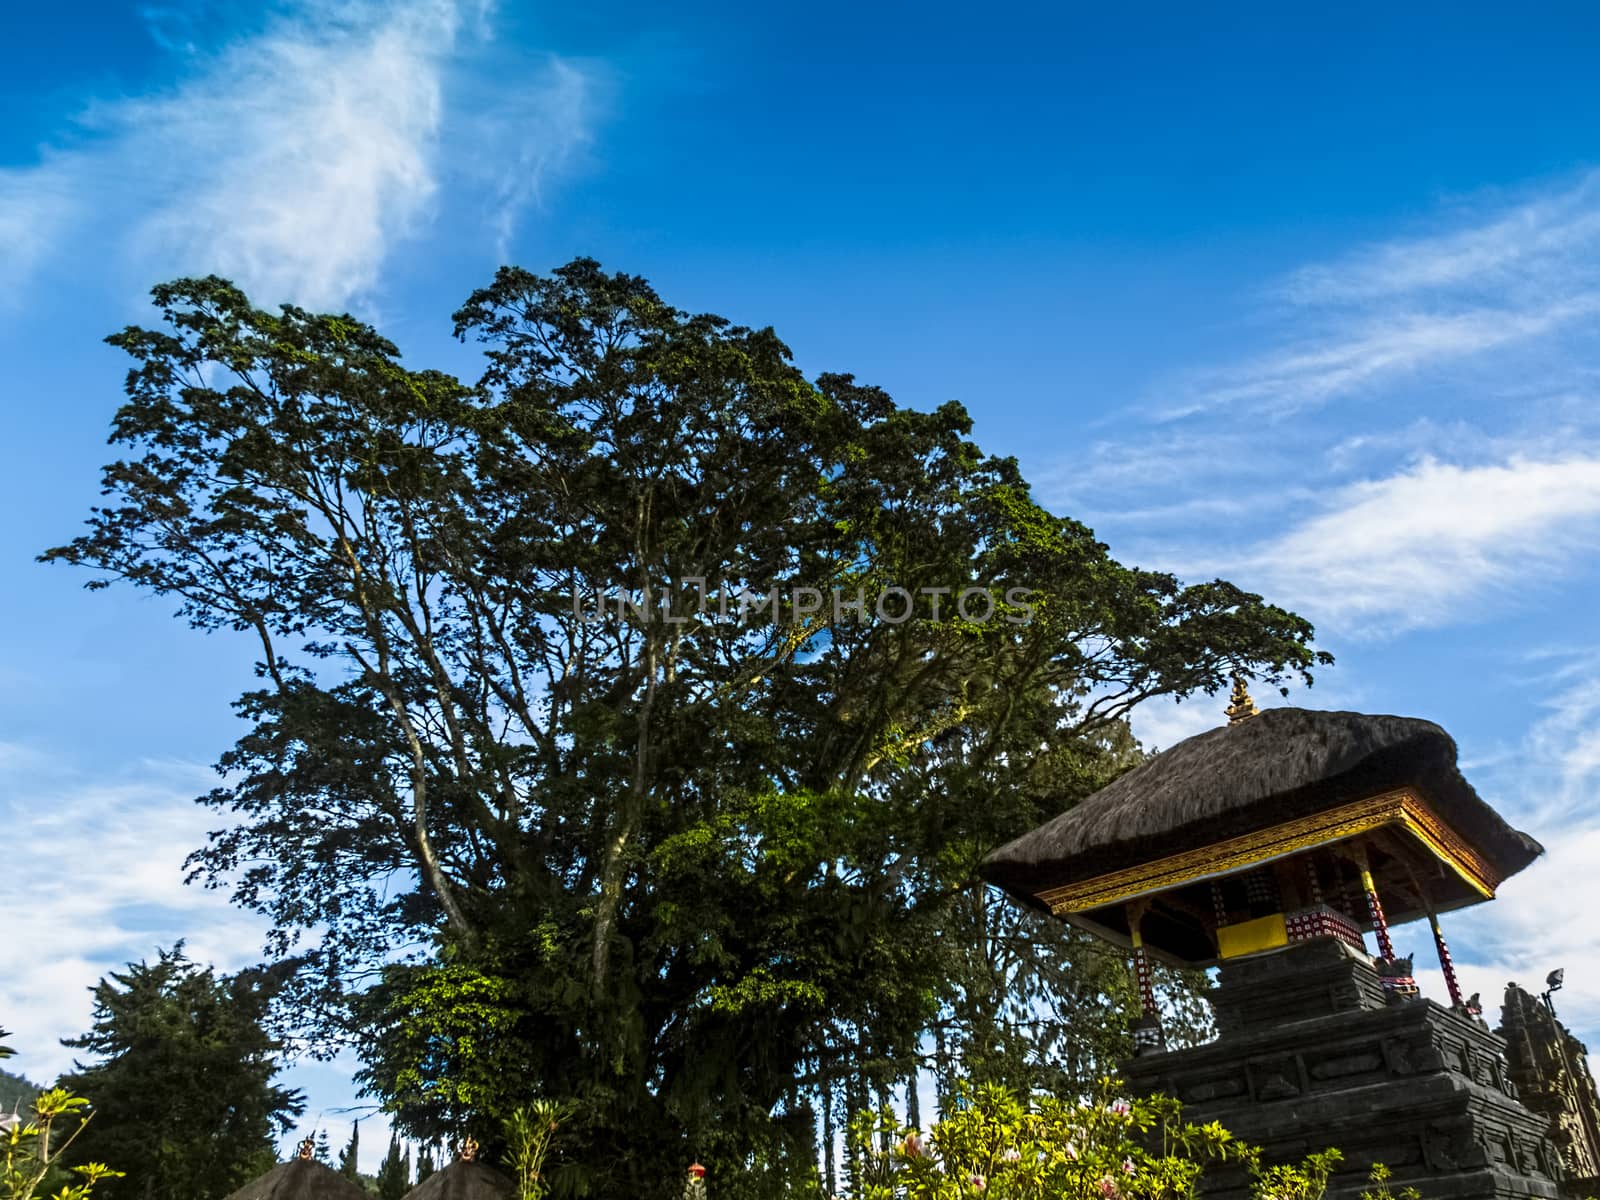 Traditional Bali Temple Under The Lush Green Tree at Ulan Danu Lake